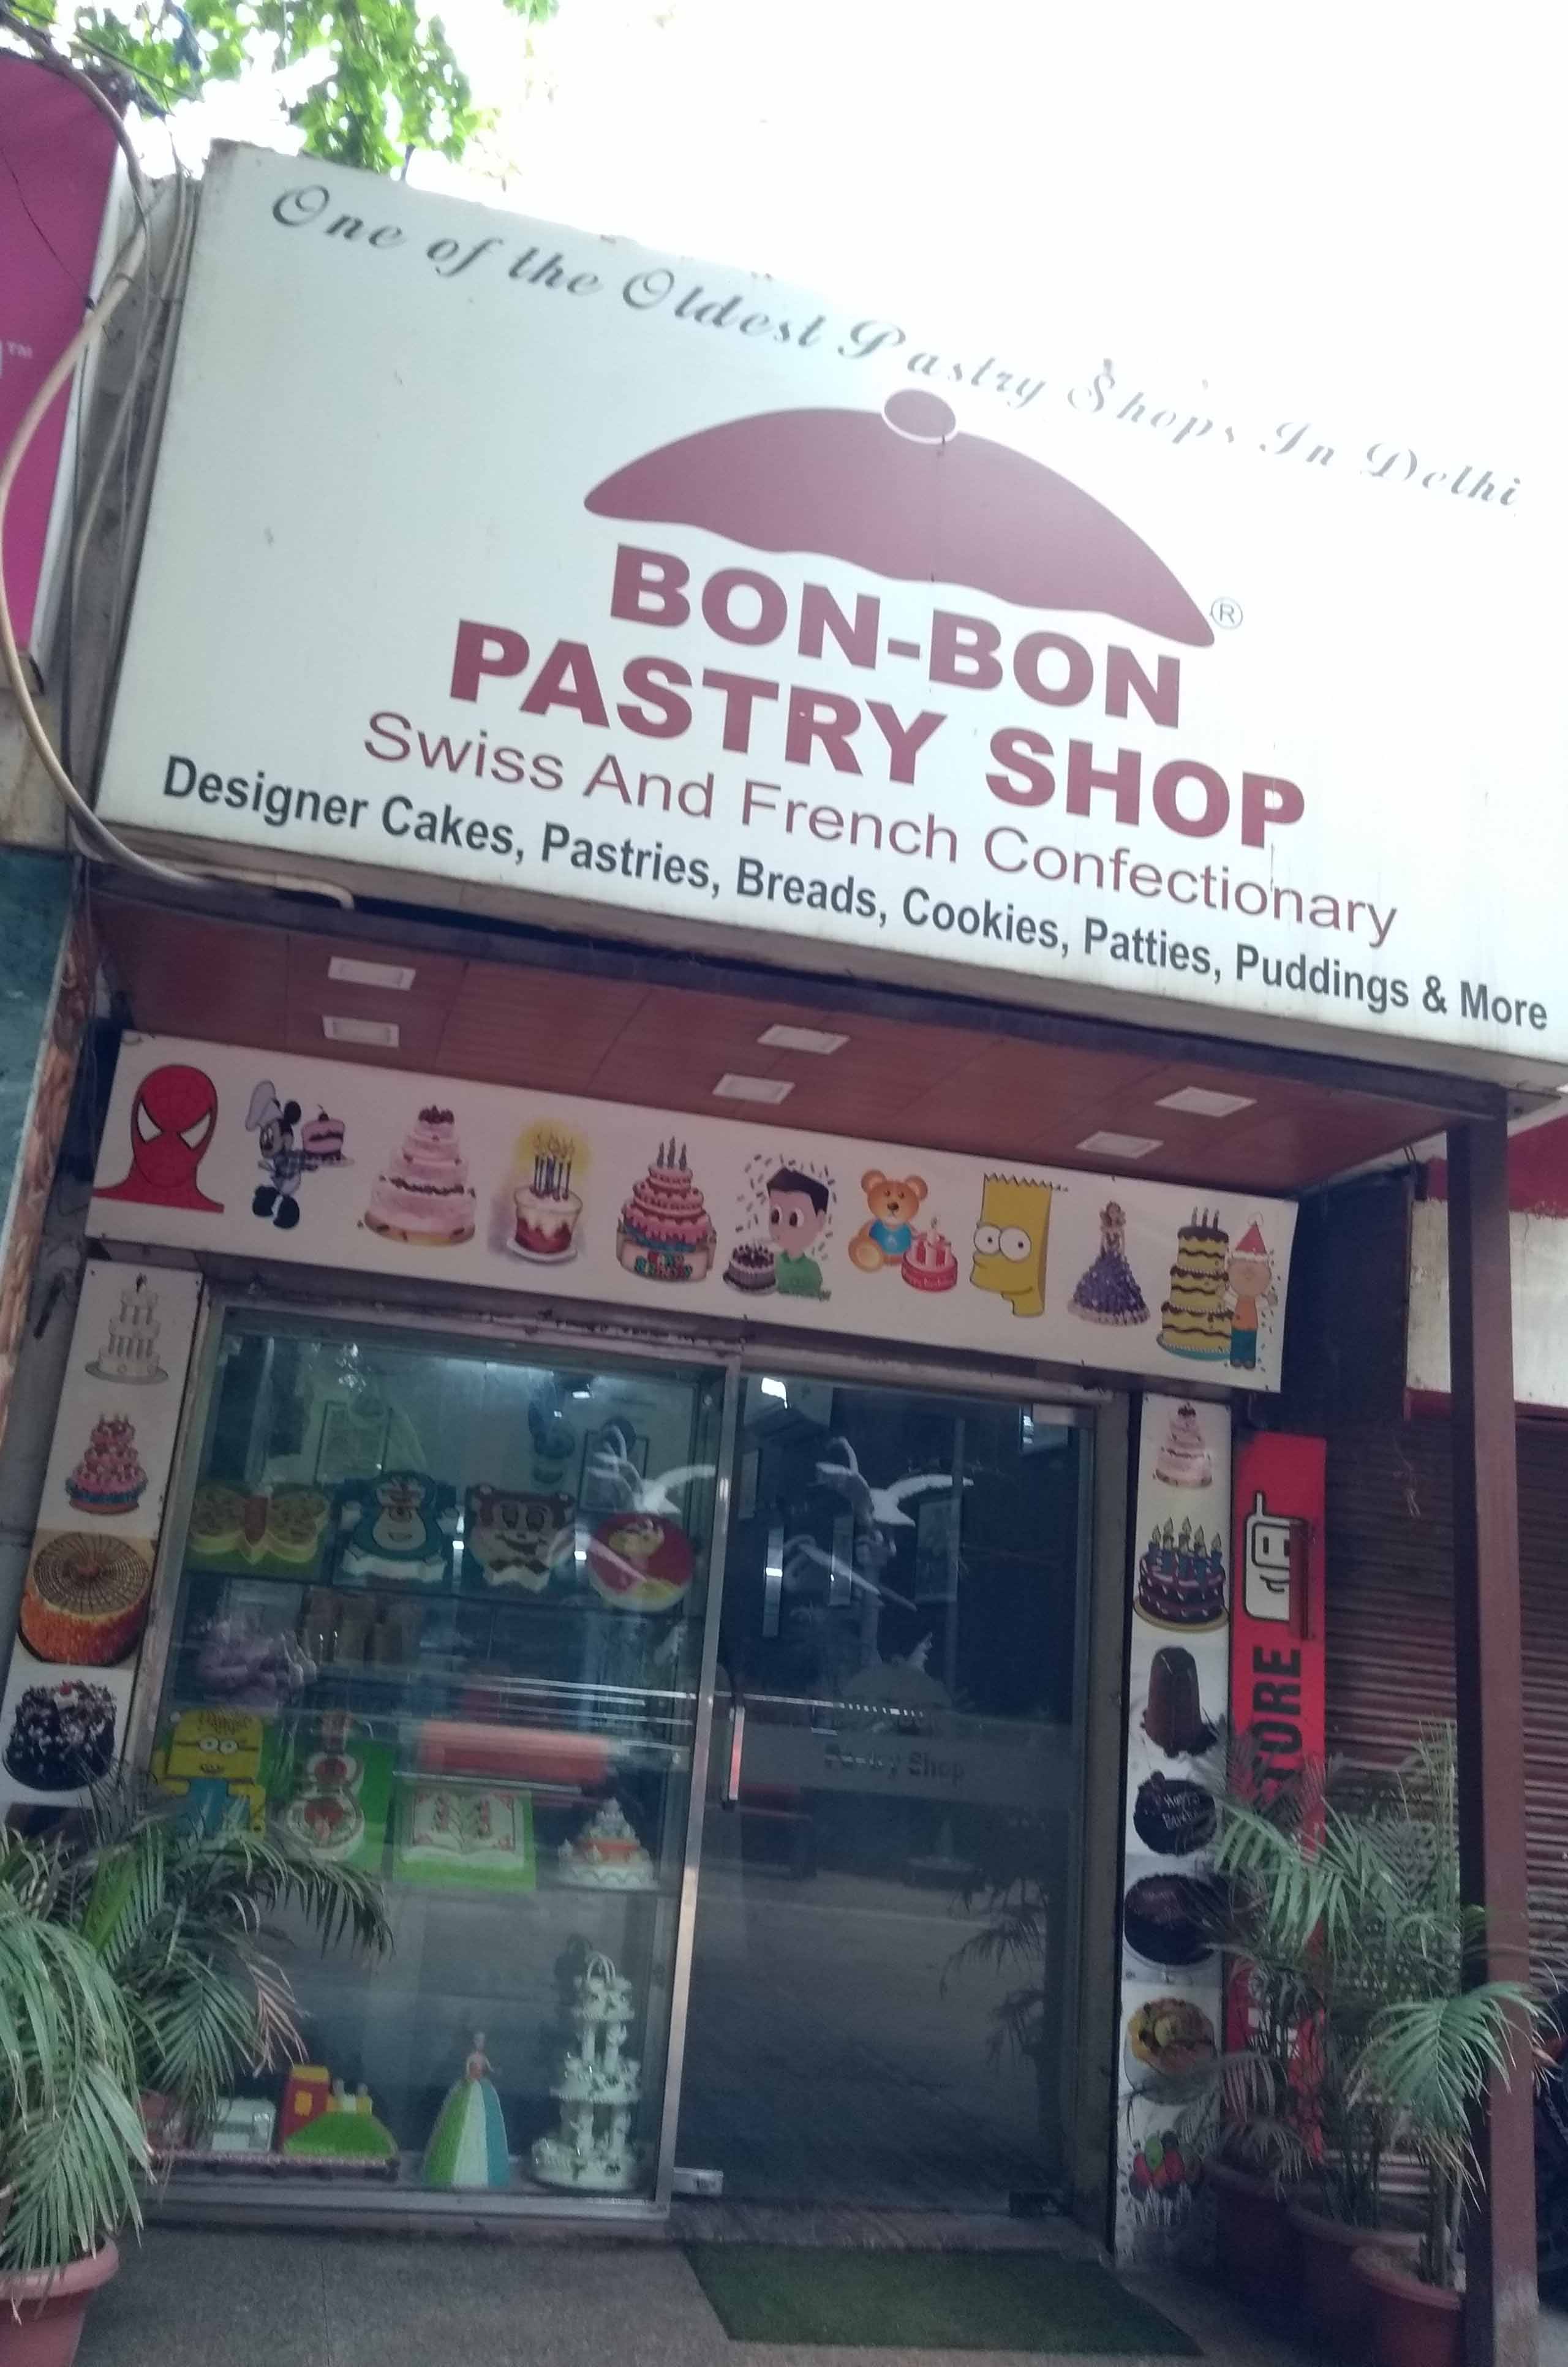 Bon-Bon Pastry Shop, New Friends Colony, New Delhi | Zomato